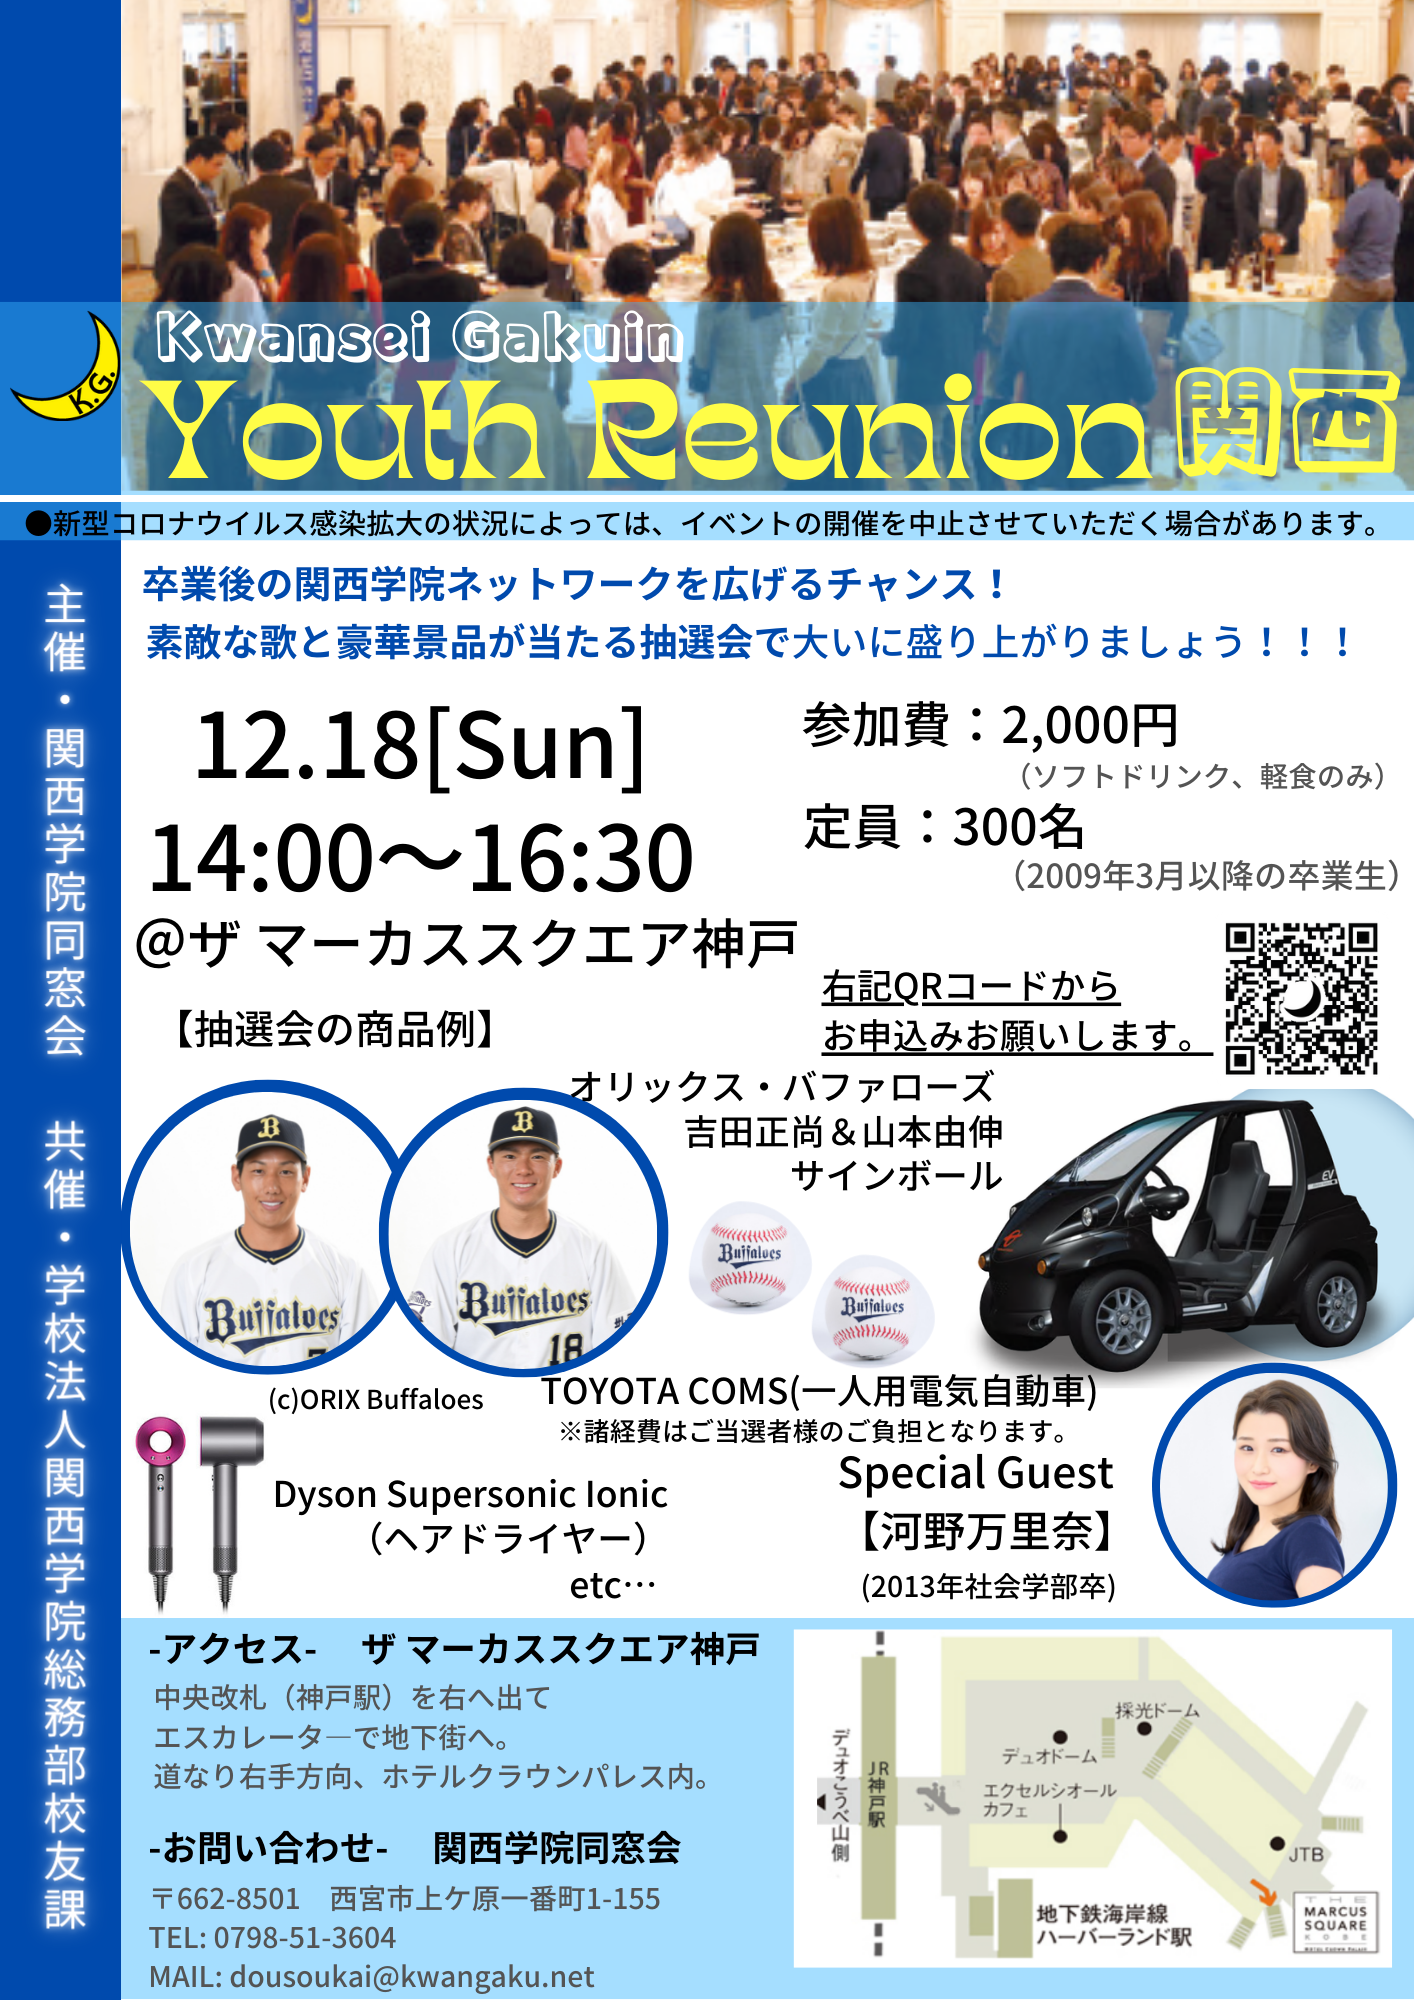 【Kwansei Gakuin Youth Reunion 関西】 開催のお知らせ